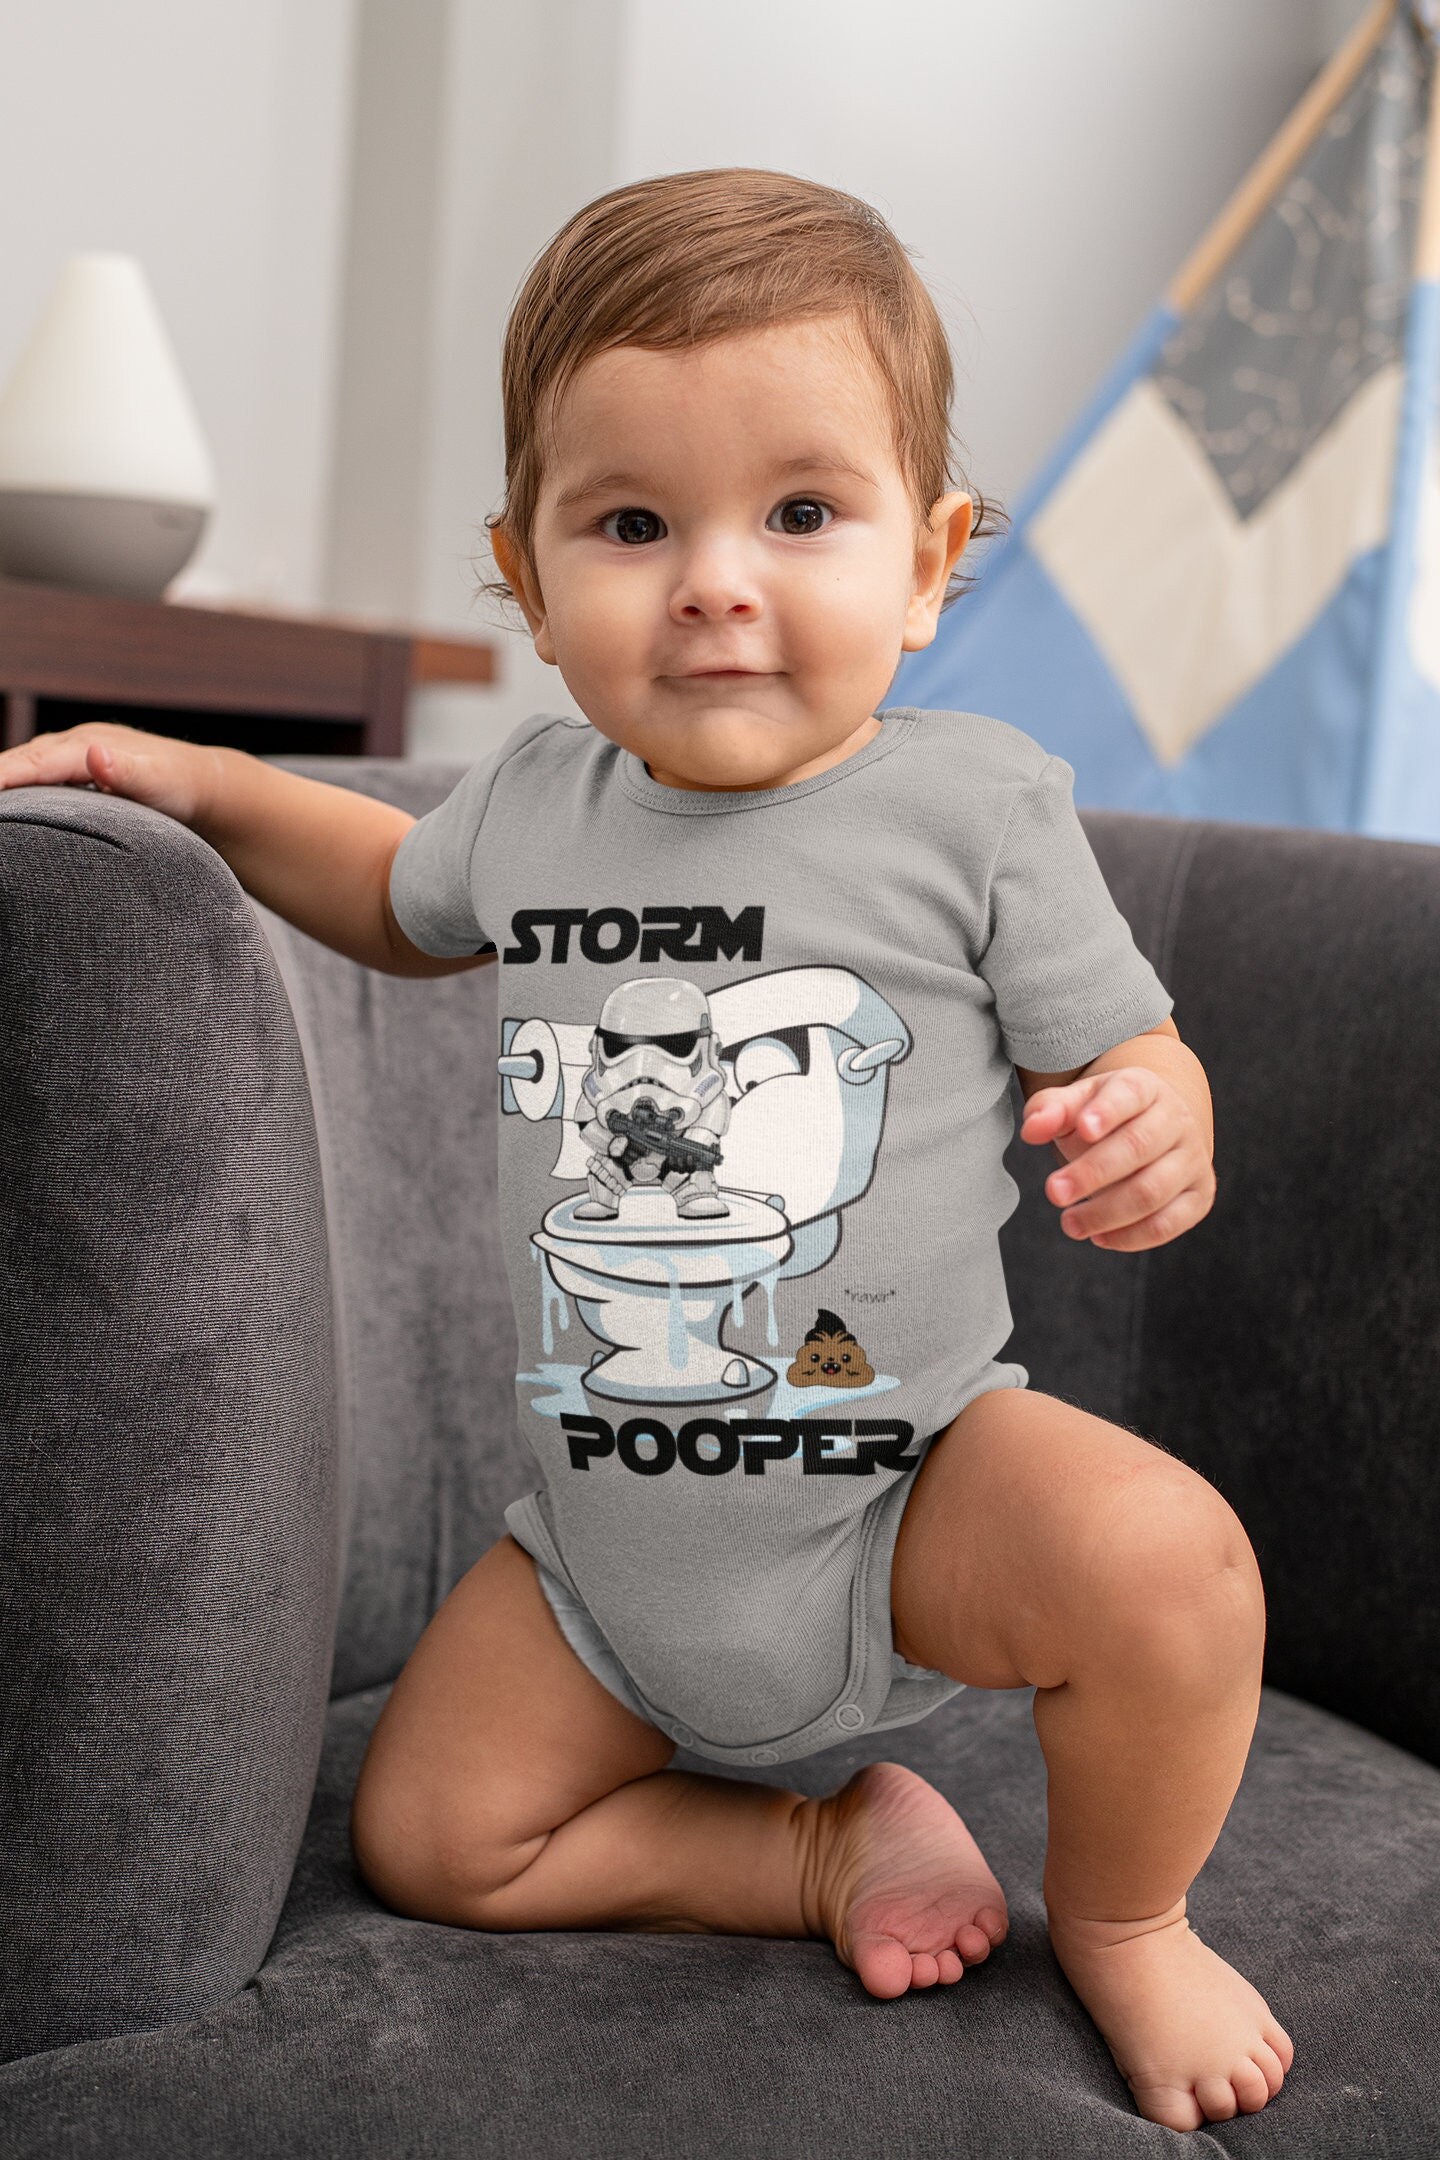 diepte Vervloekt Converteren Star Wars Baby Onesie Baby Clothes Funny Storm Pooper Storm - Etsy Israel